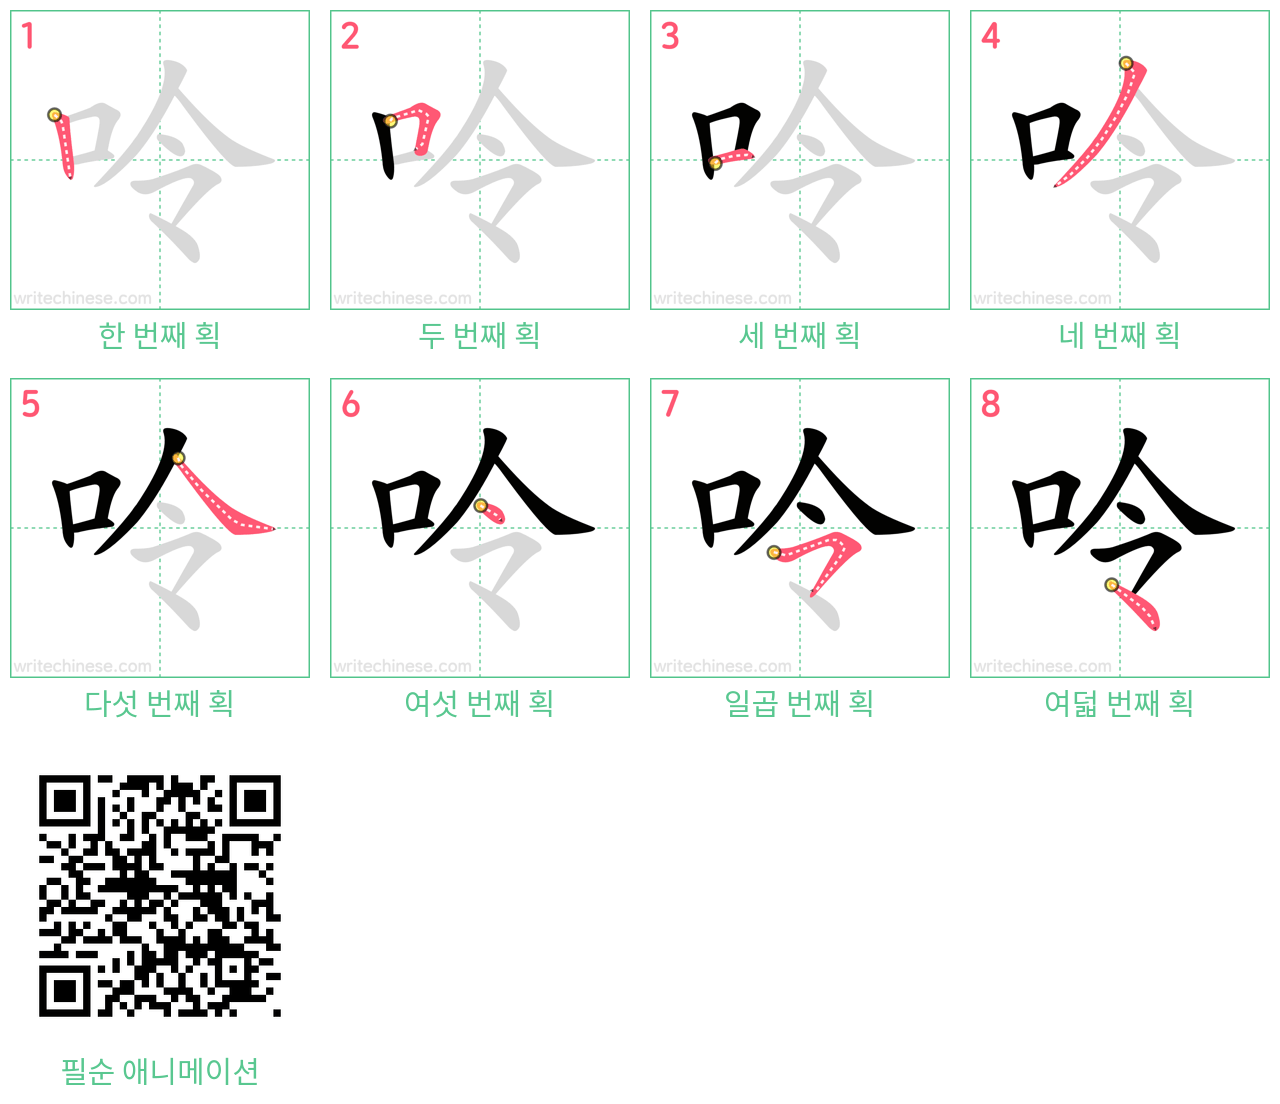 呤 step-by-step stroke order diagrams